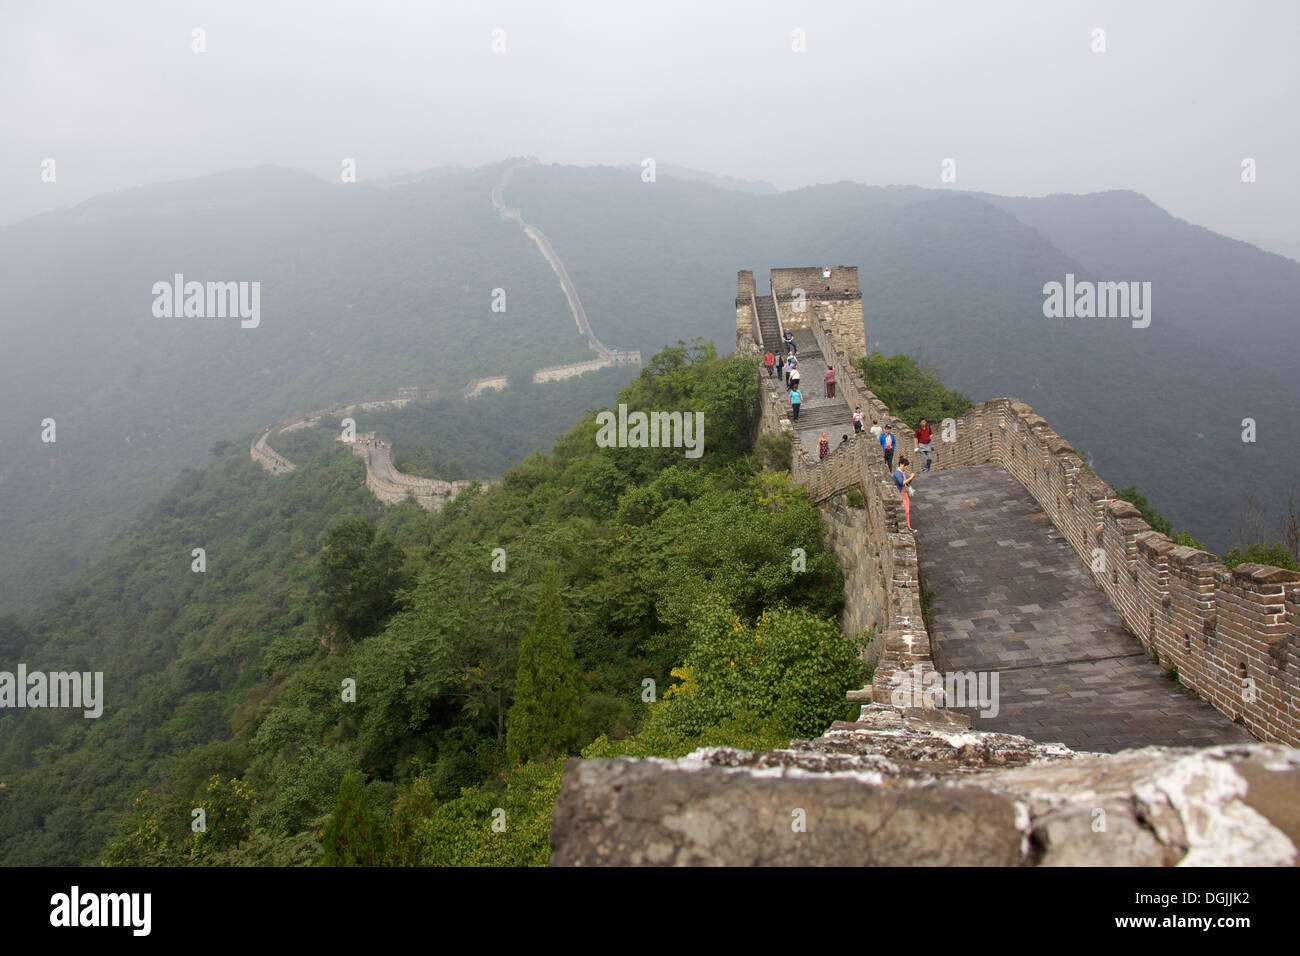 La Grande Muraglia della Cina Große chinesische Mauer, Pechino, Cina, Repubblica Popolare di Cina Foto Stock